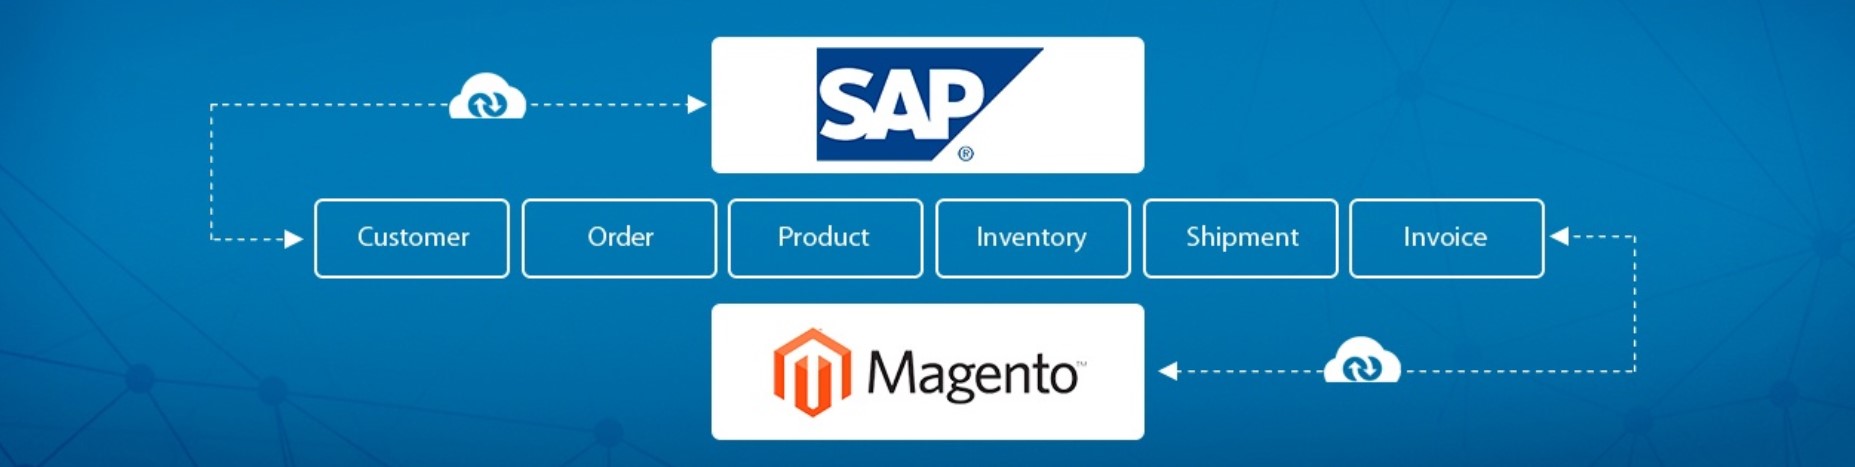 Magento SAP ERP Integration